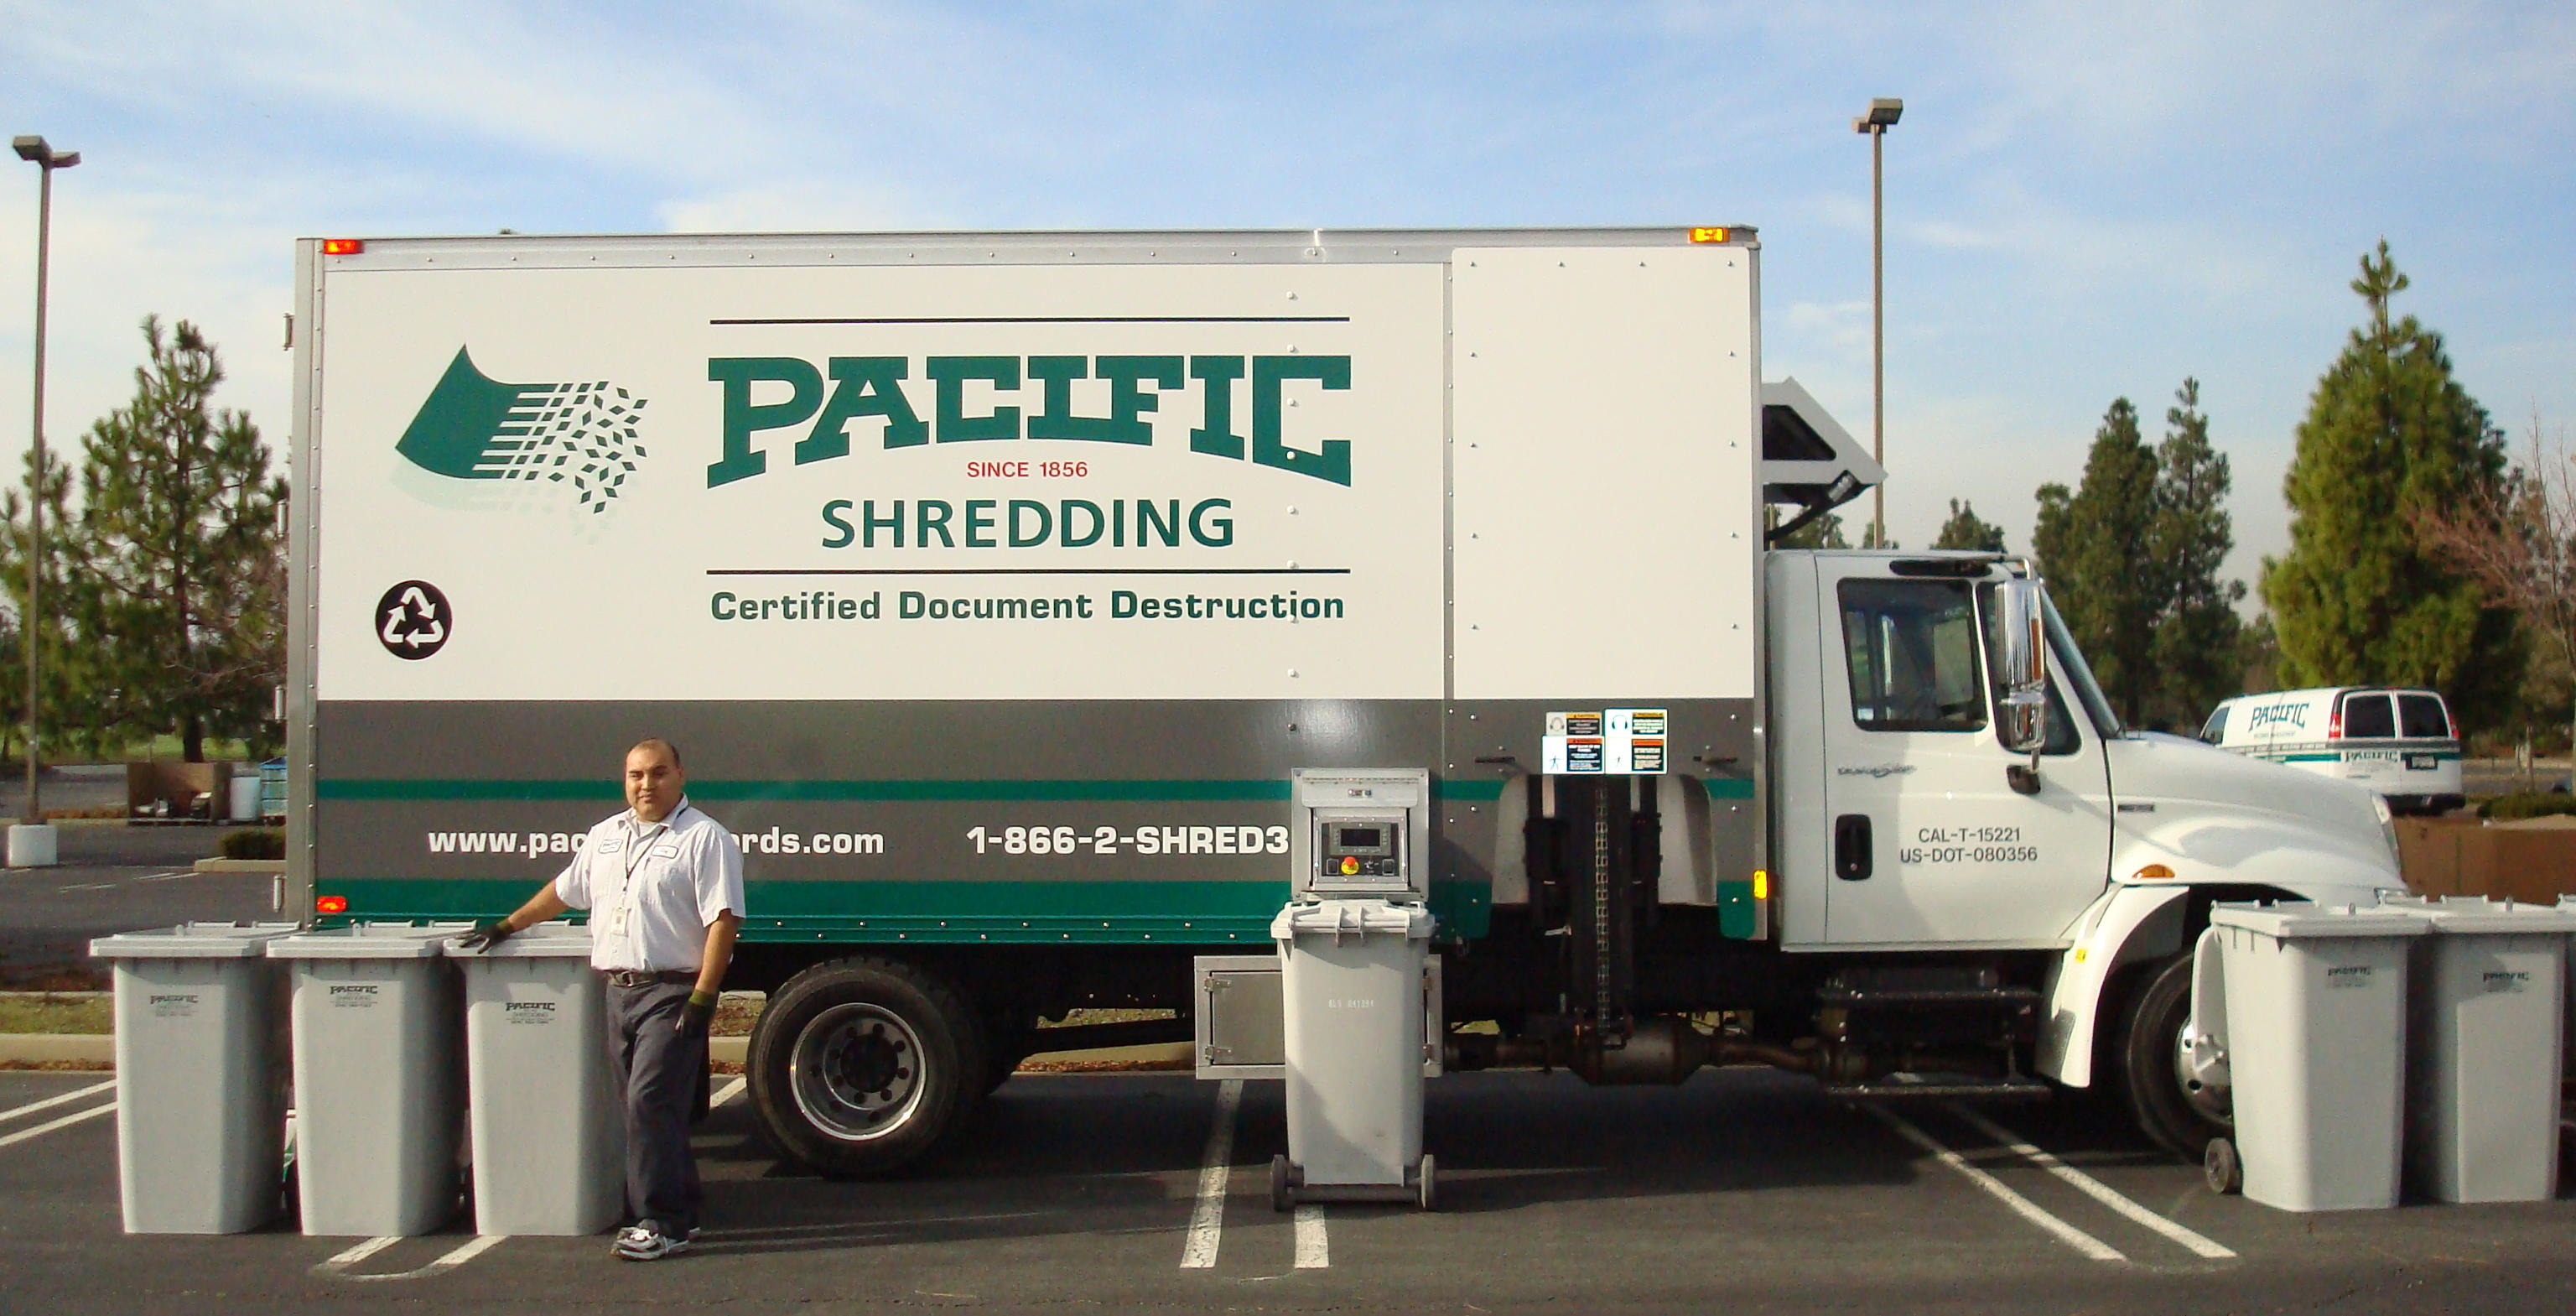 Pacific Shredding's mobile, on-site shredding truck